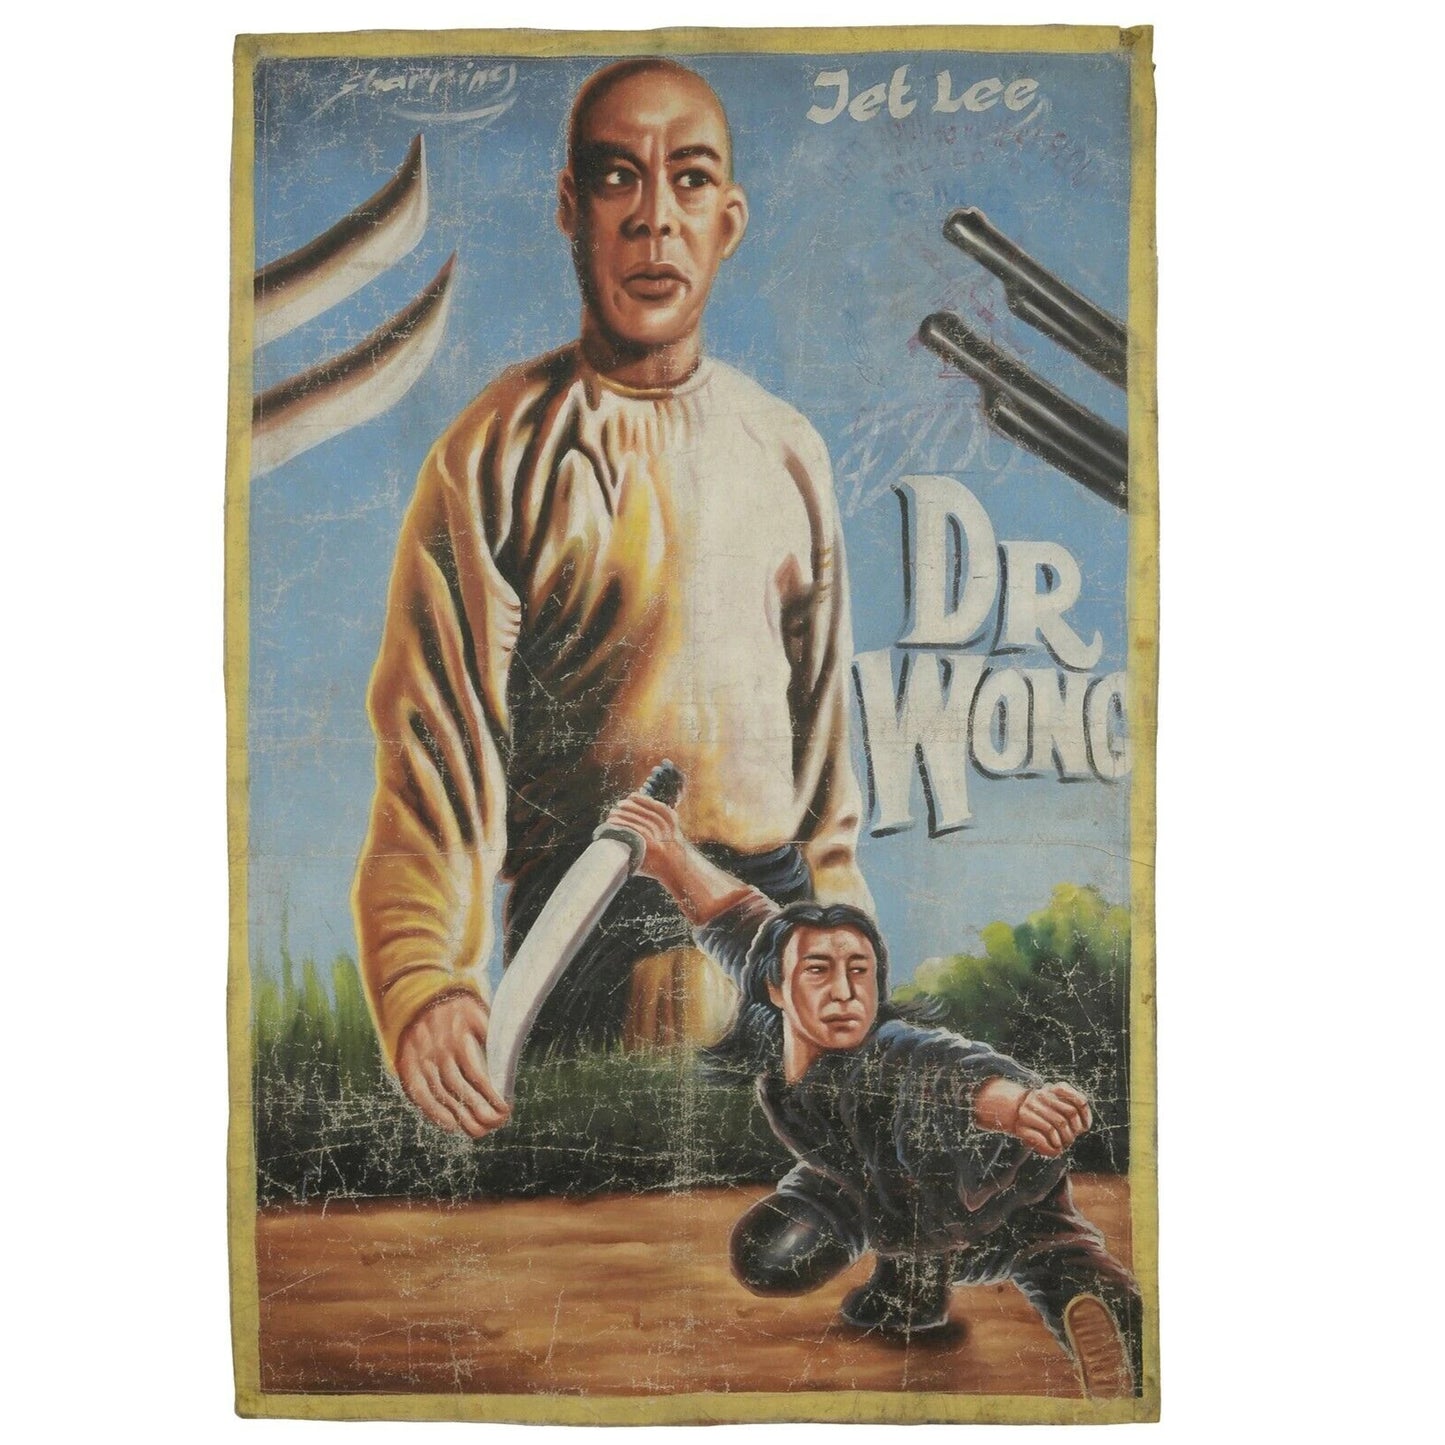 Cartel de la película de Ghana Arte del cine africano lienzo de saco de harina pintado a mano DR WONG - Tribalgh